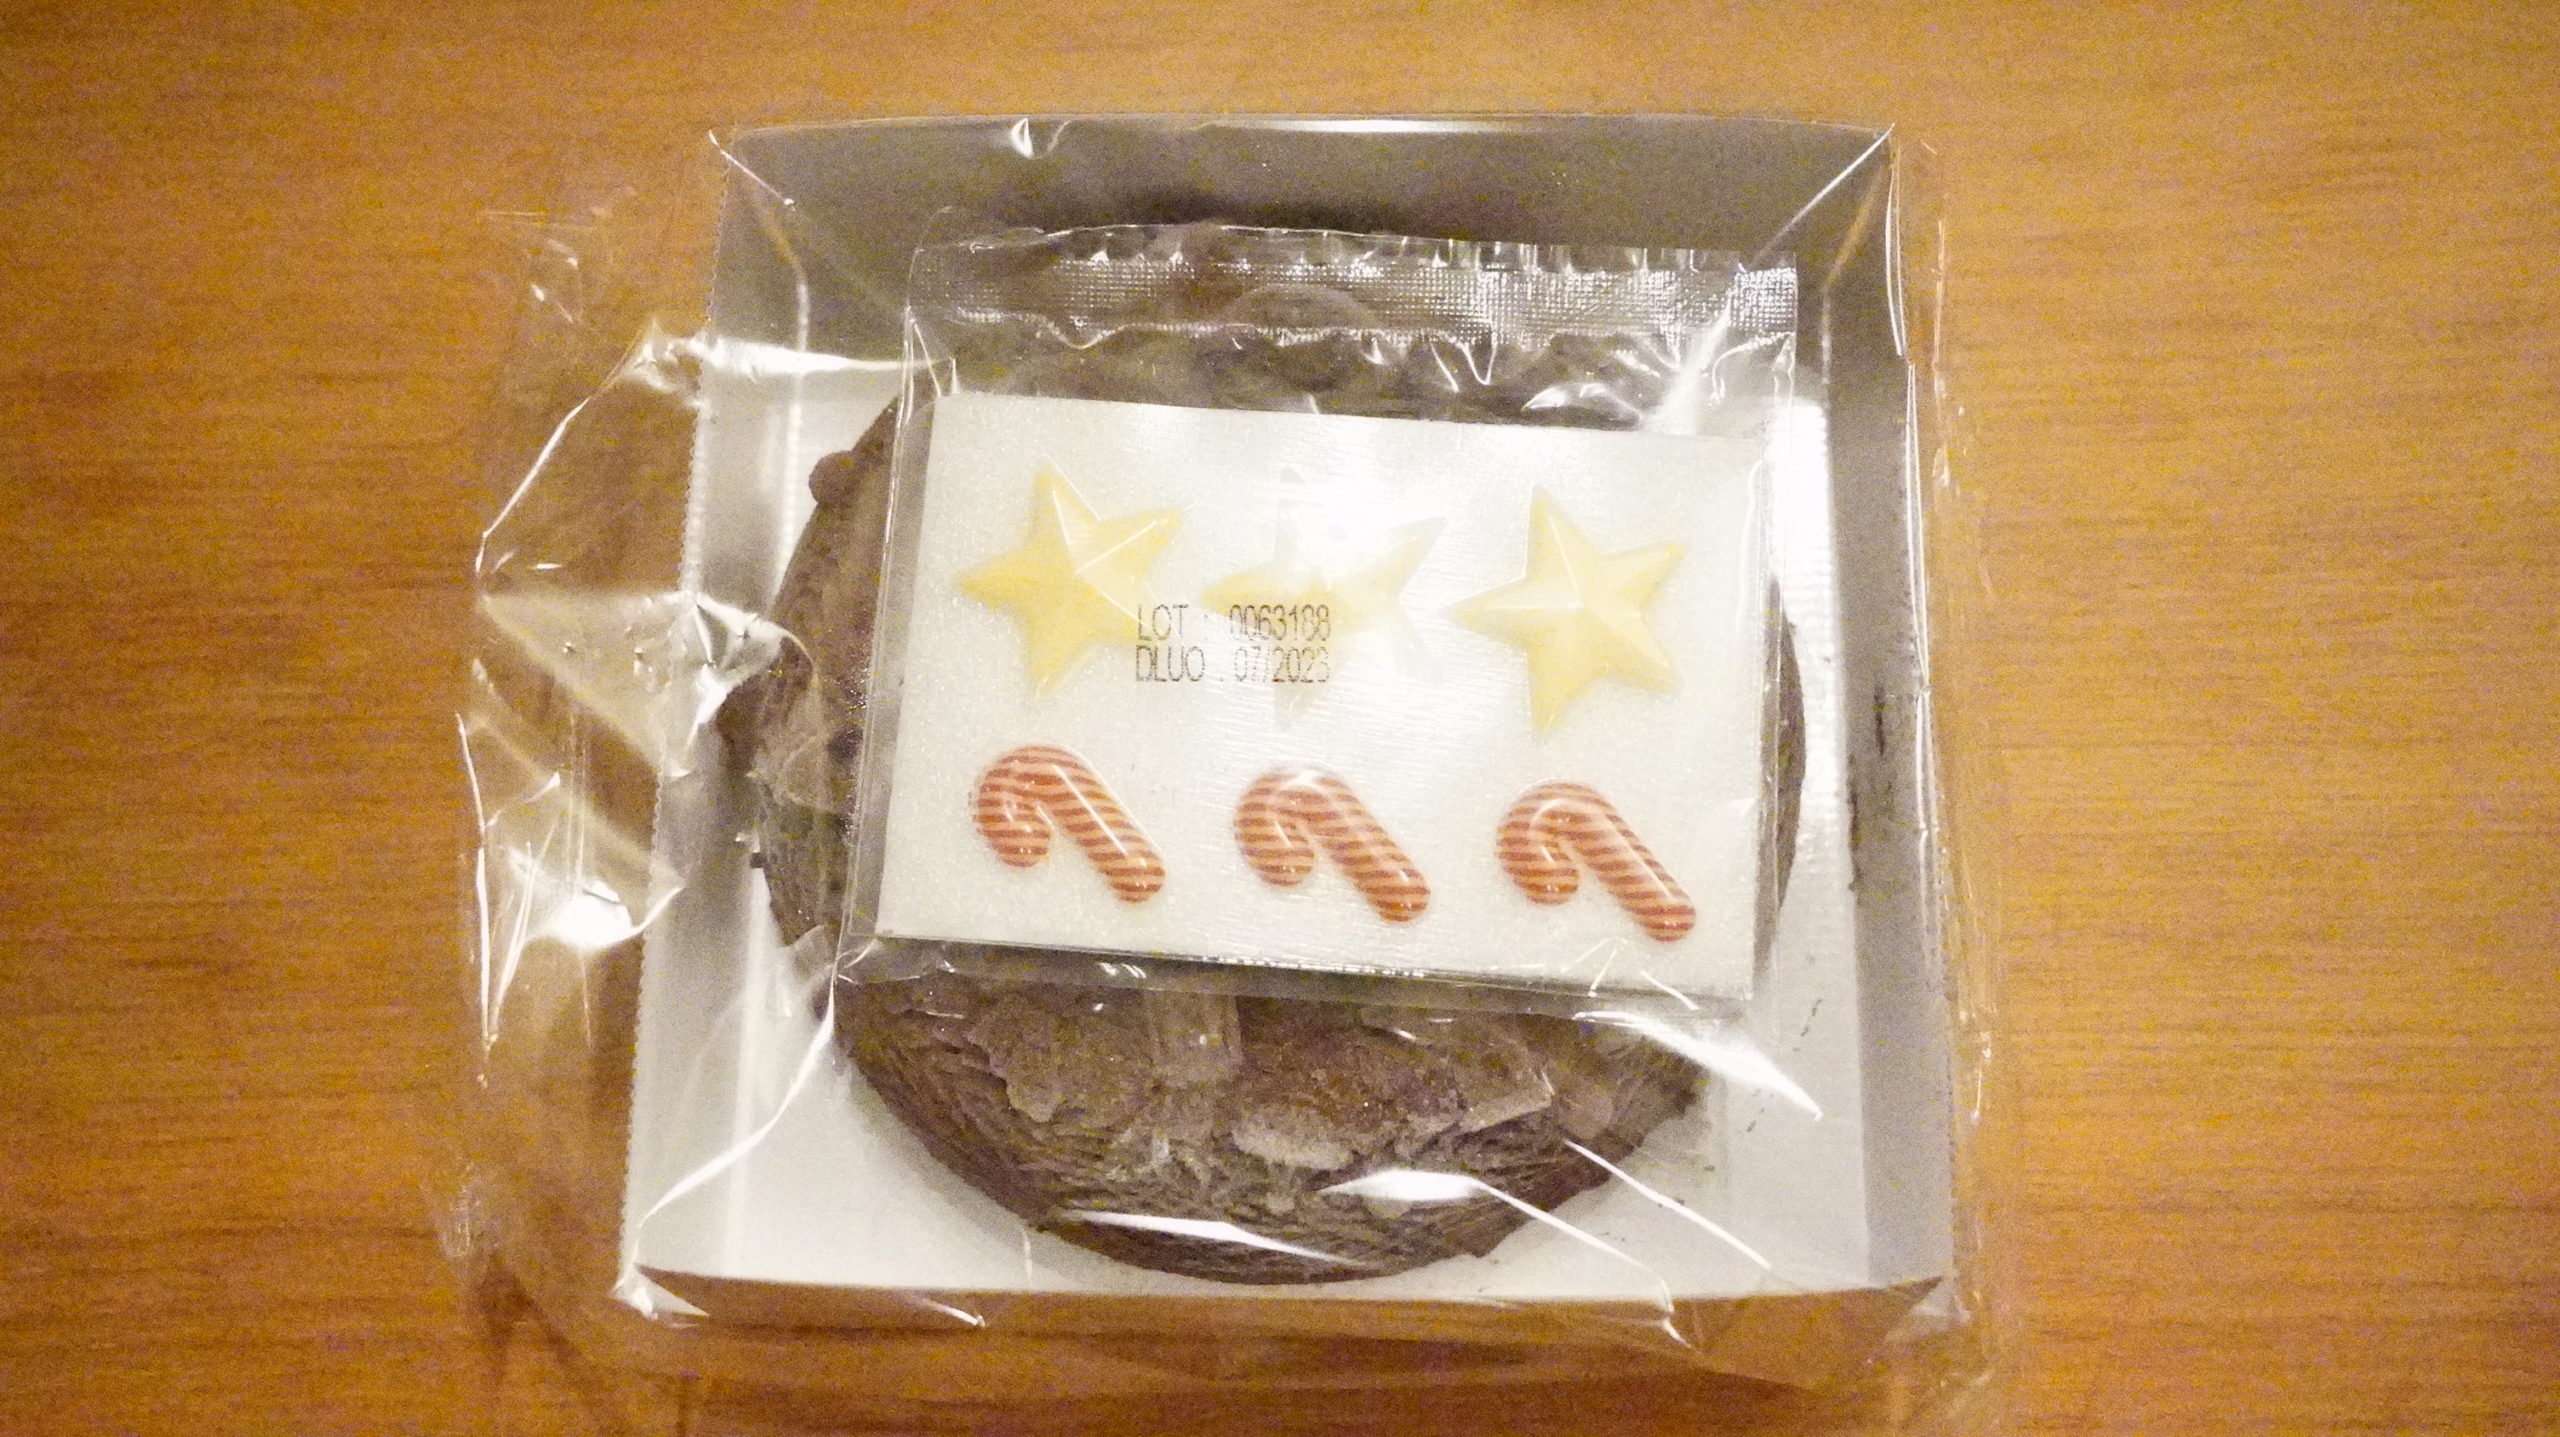 ピカールの冷凍食品「クリスマスリース」のパッケージの中身の写真